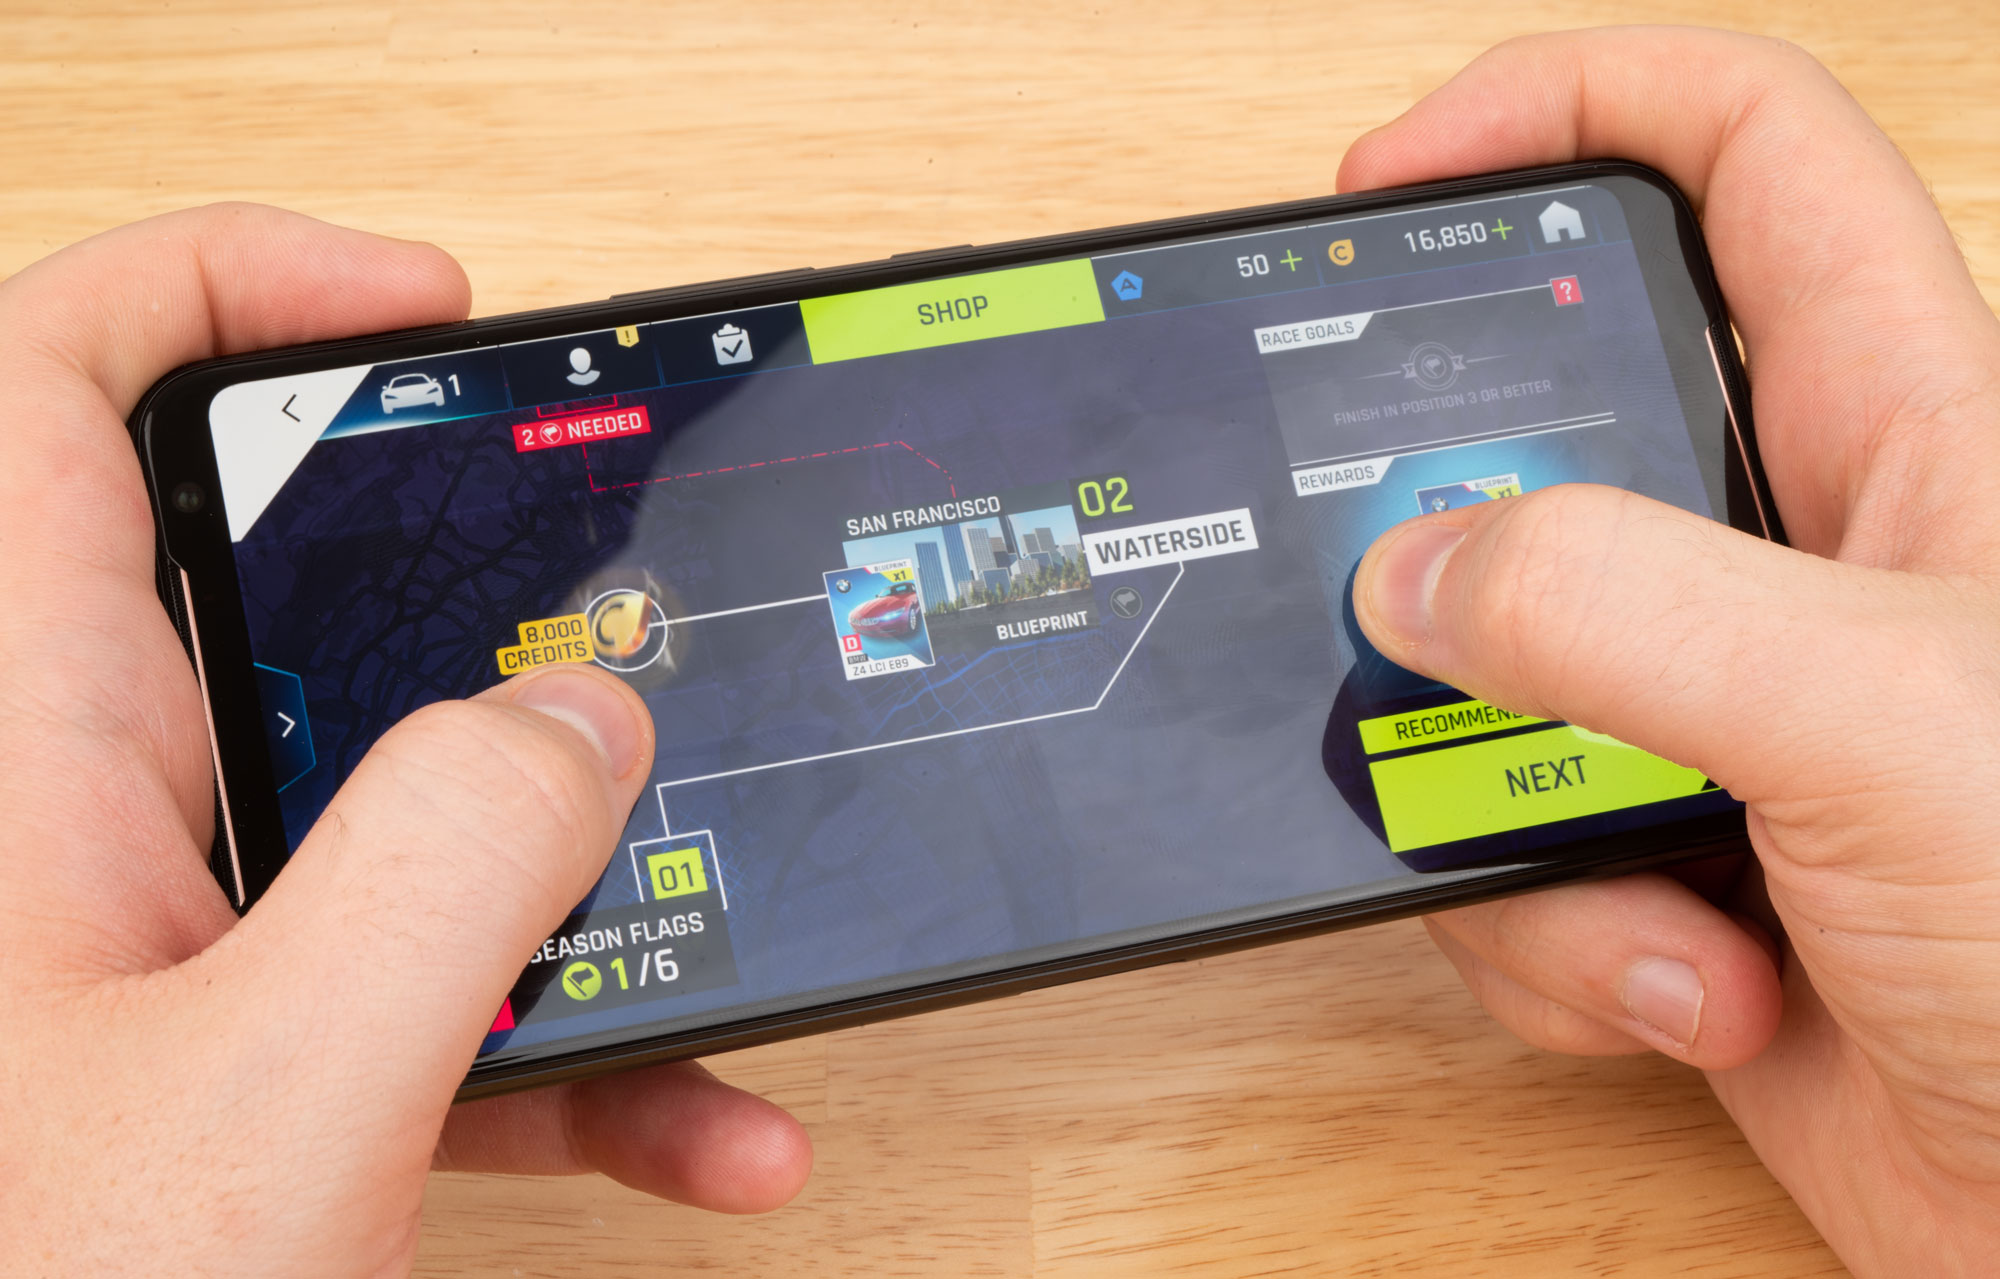 ASUS ROG Phone III lộ
điểm hiệu năng ấn tượng với chip Snapdragon 865 và RAM 12GB